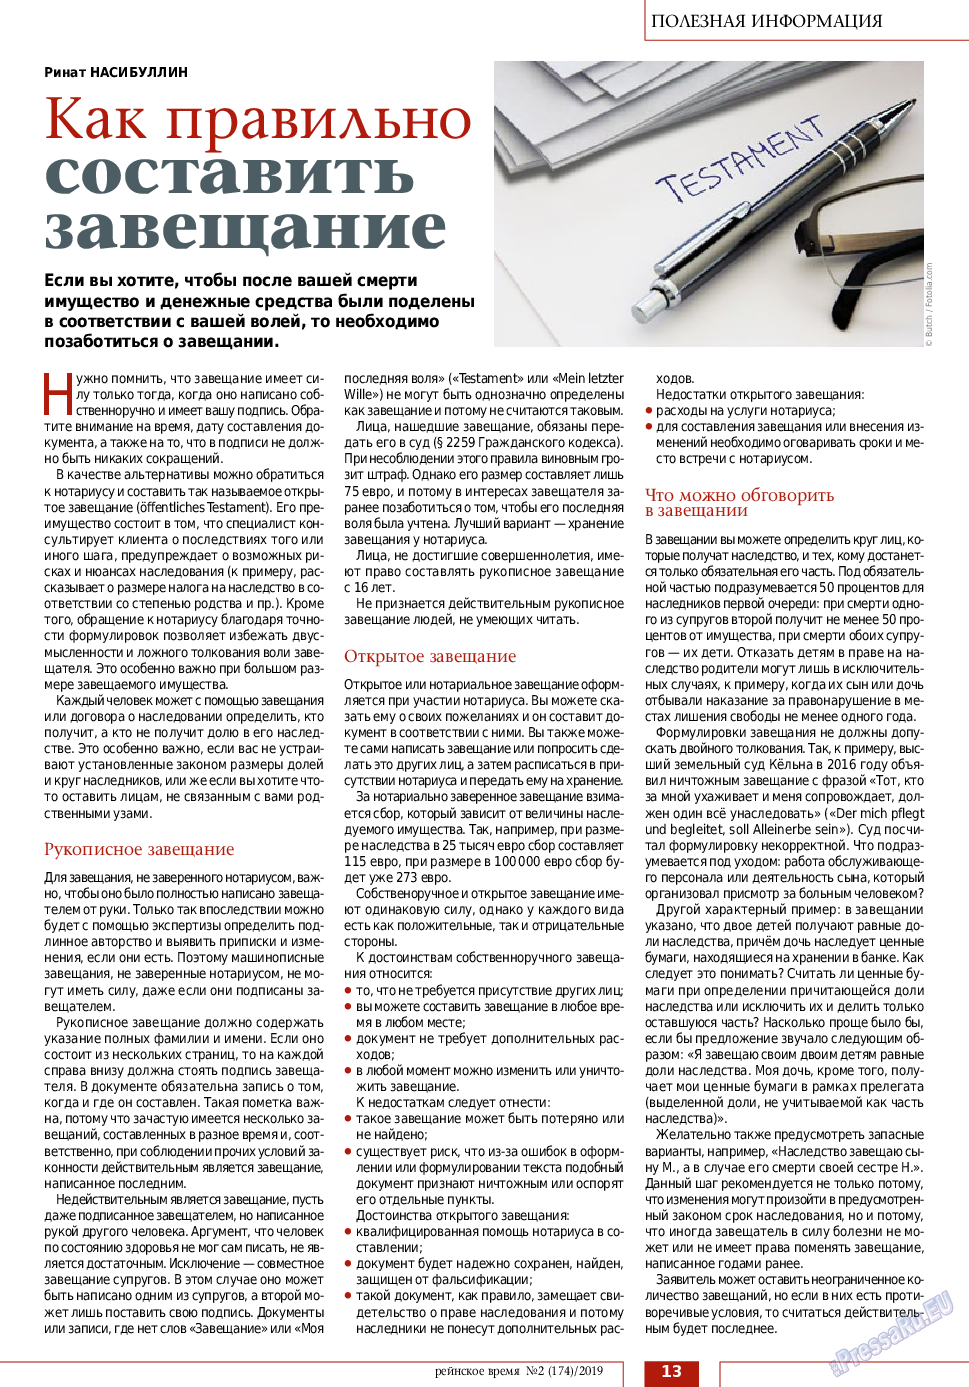 Рейнское время, журнал. 2019 №2 стр.13